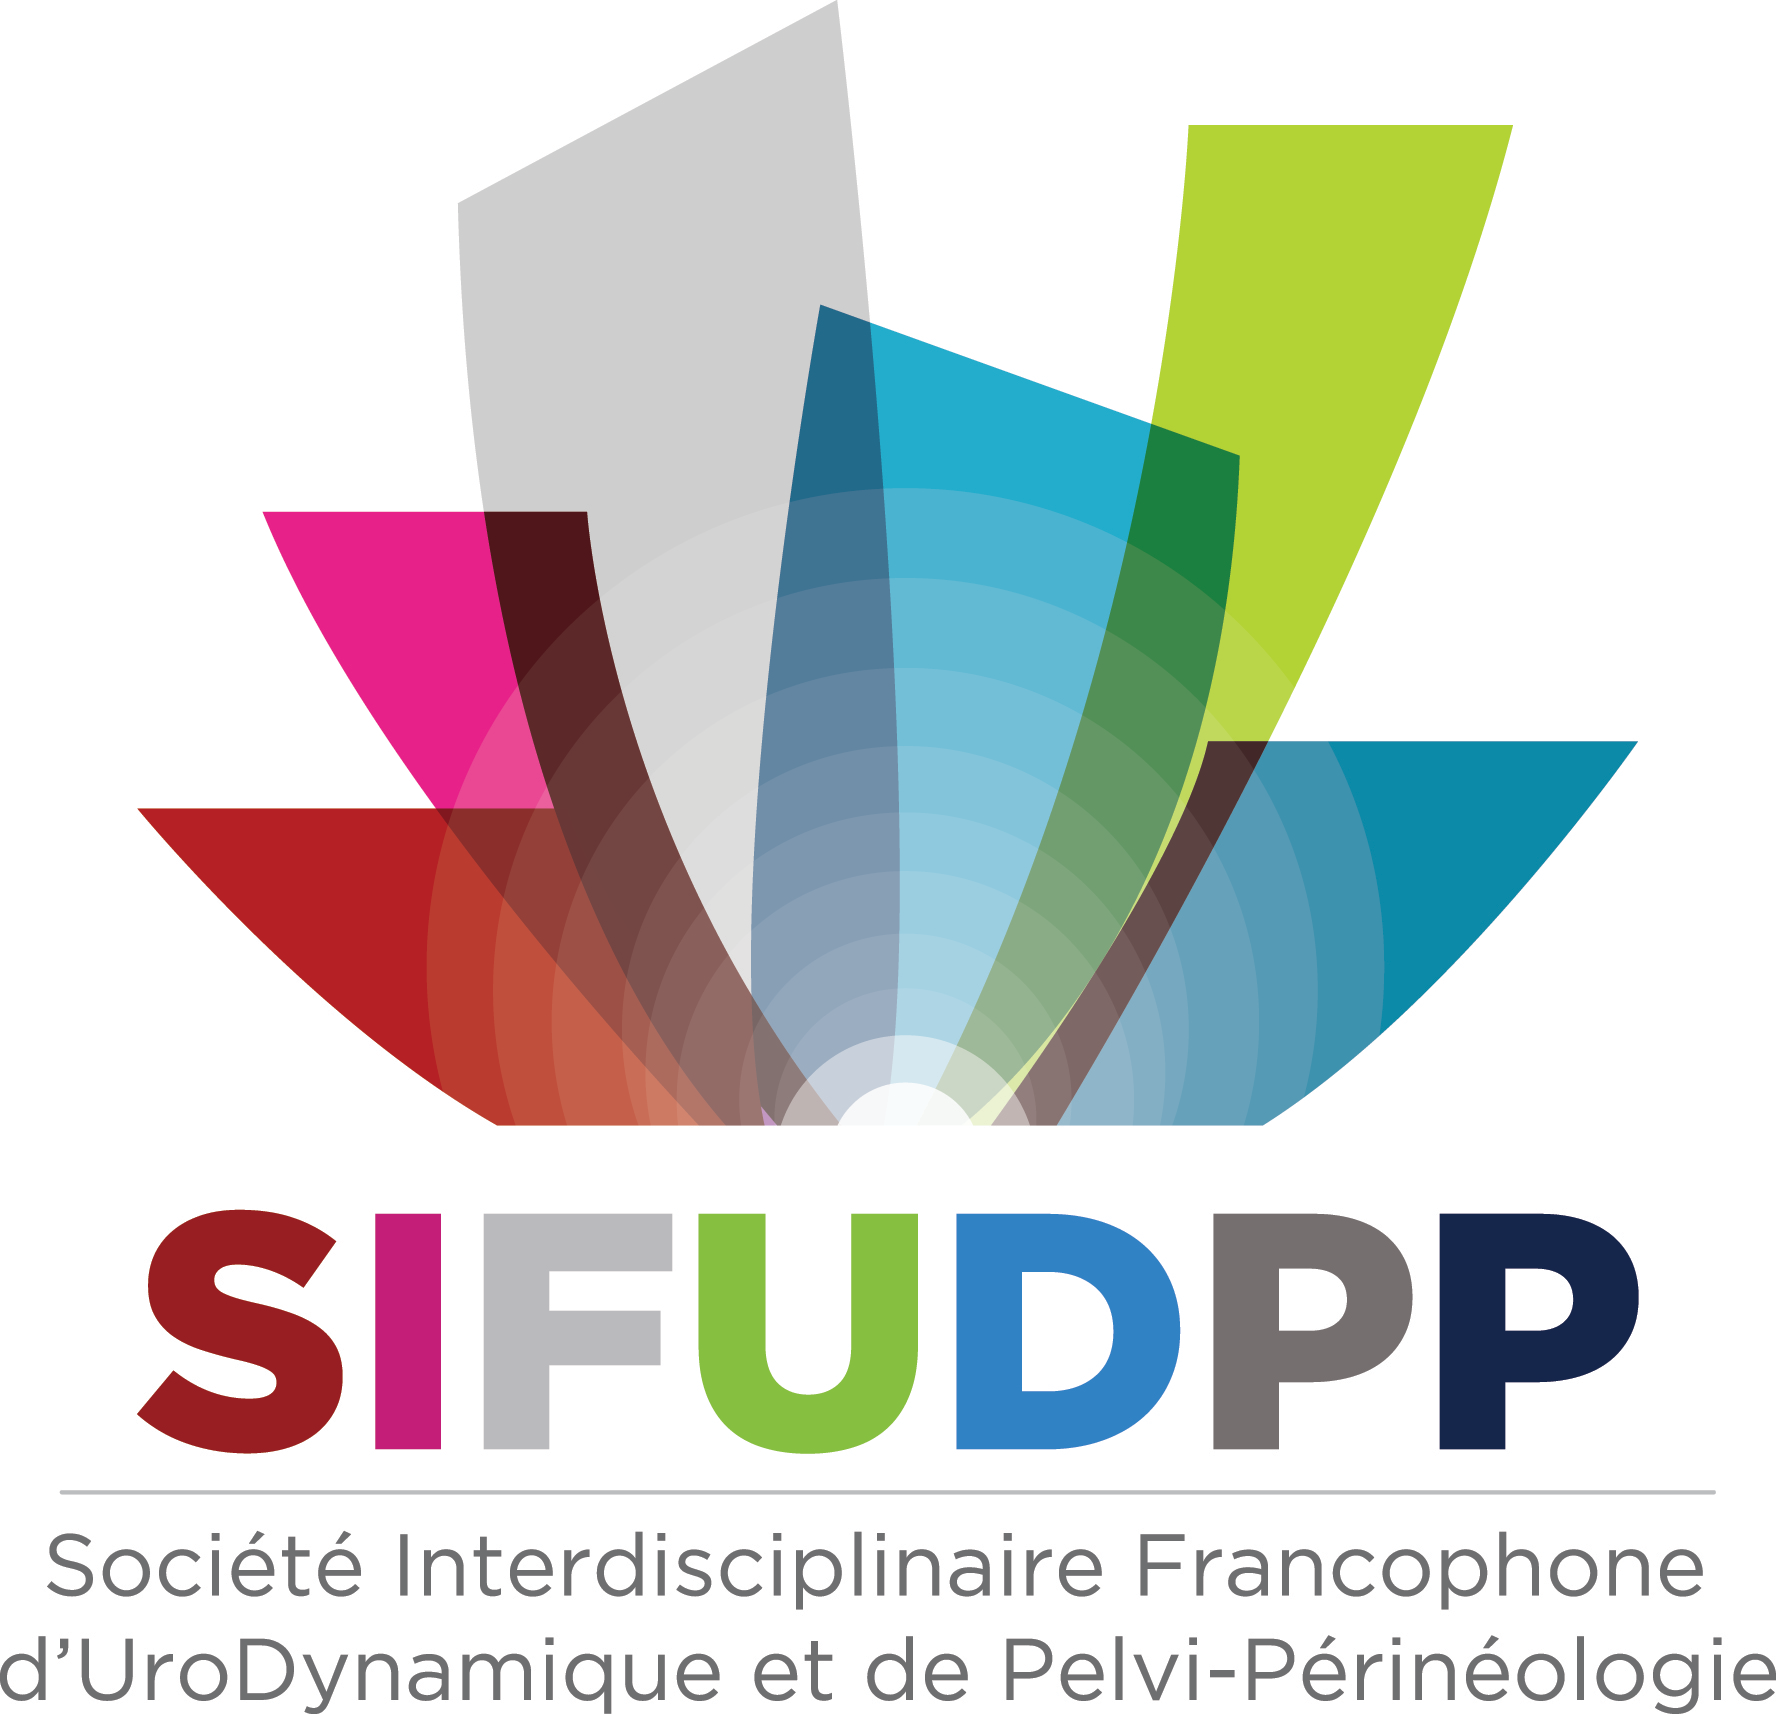 SIFUD-PP Paris 2016 : L’autosondage est-il limité de 7 à 77 ans ?